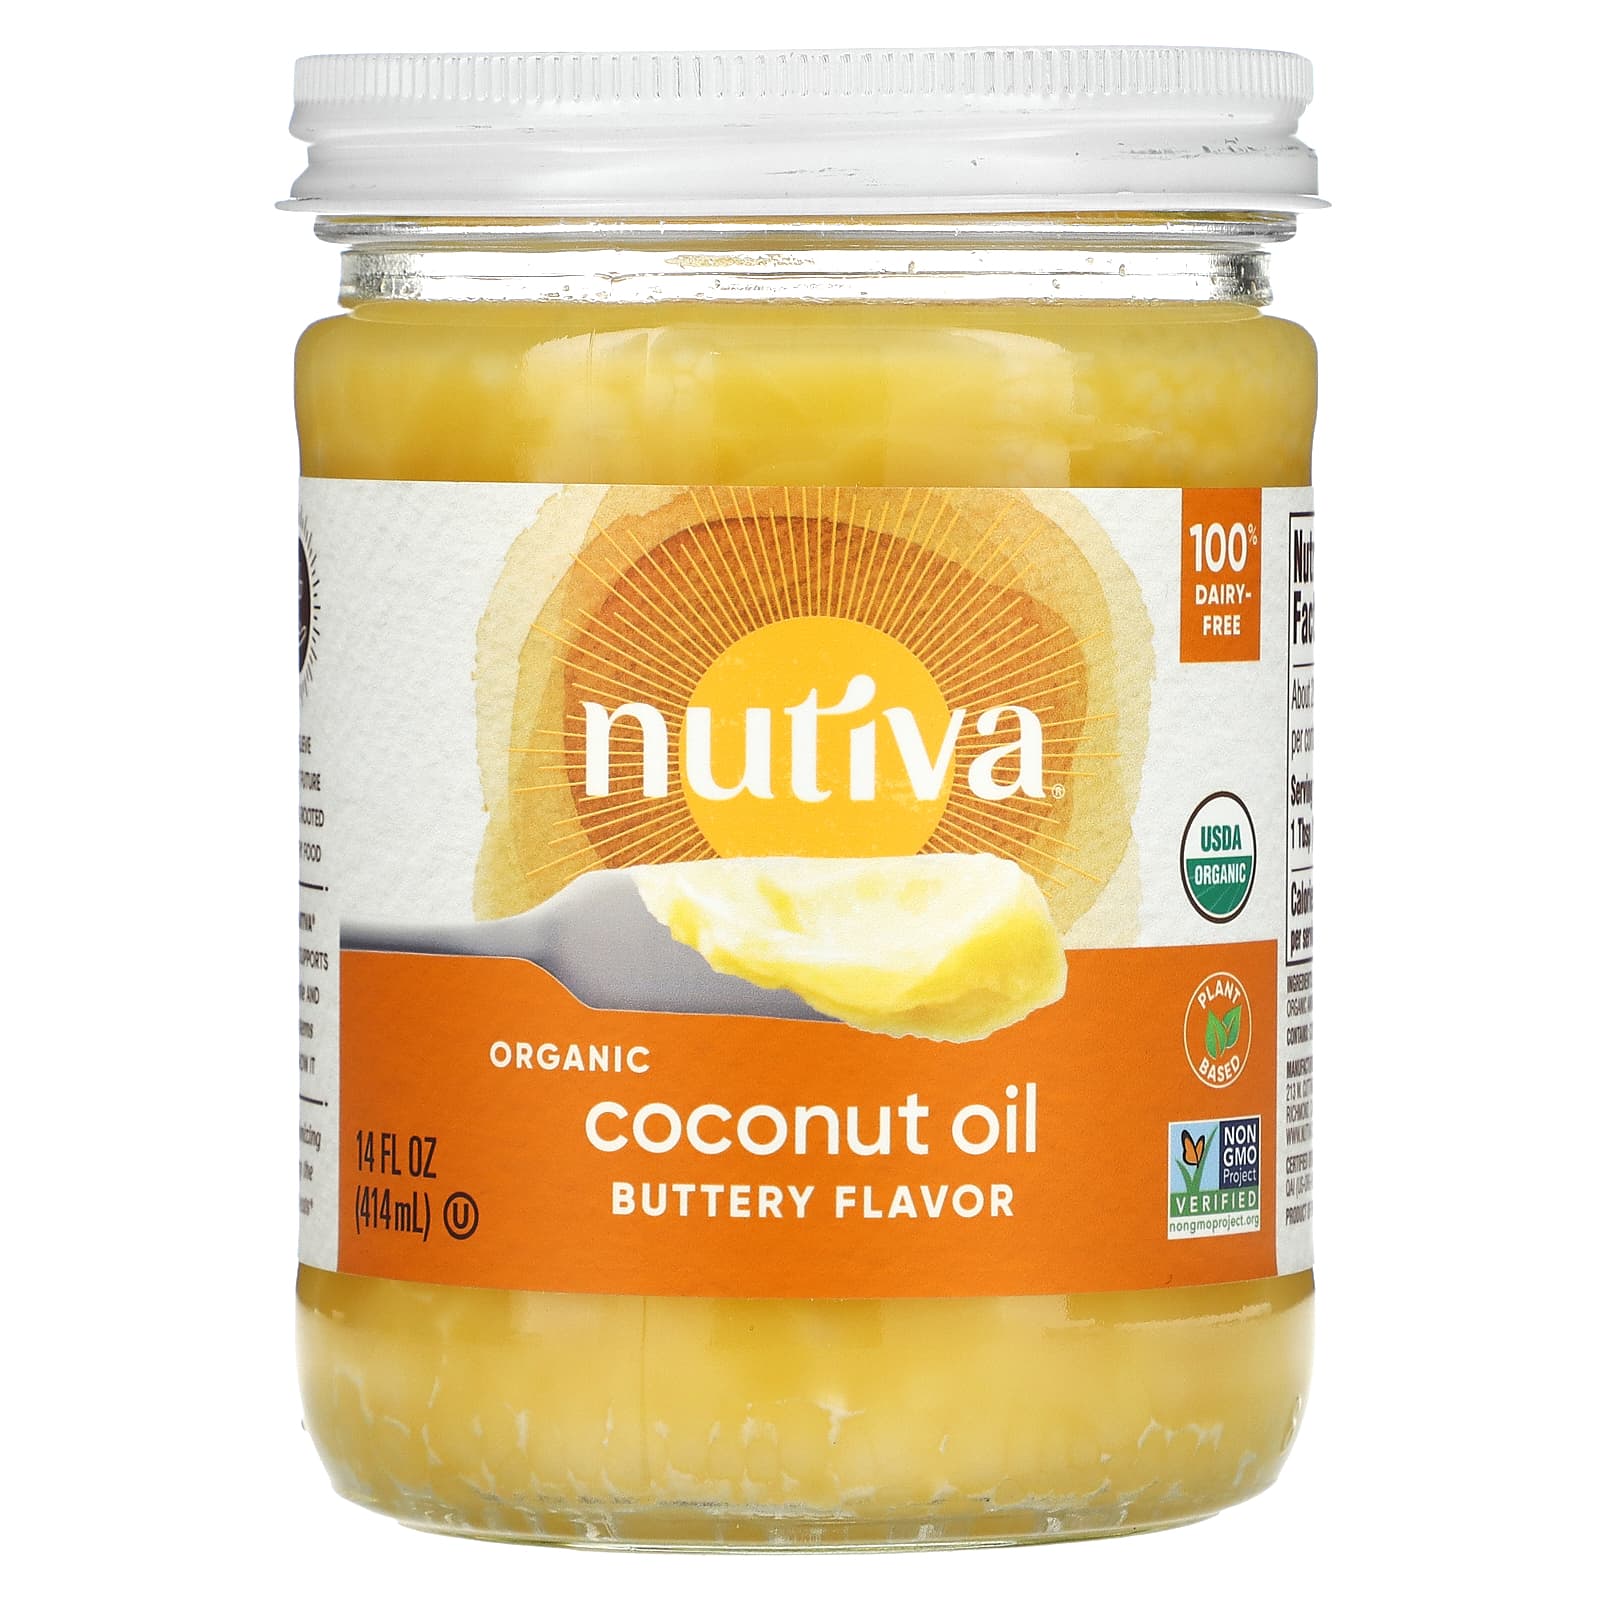 Nutiva Органическое кокосовое масло со вкусом сливочного масла 14 ж. унц. (414 мл) nutiva органическое веганское топленое масло 414 мл 14 жидк унций